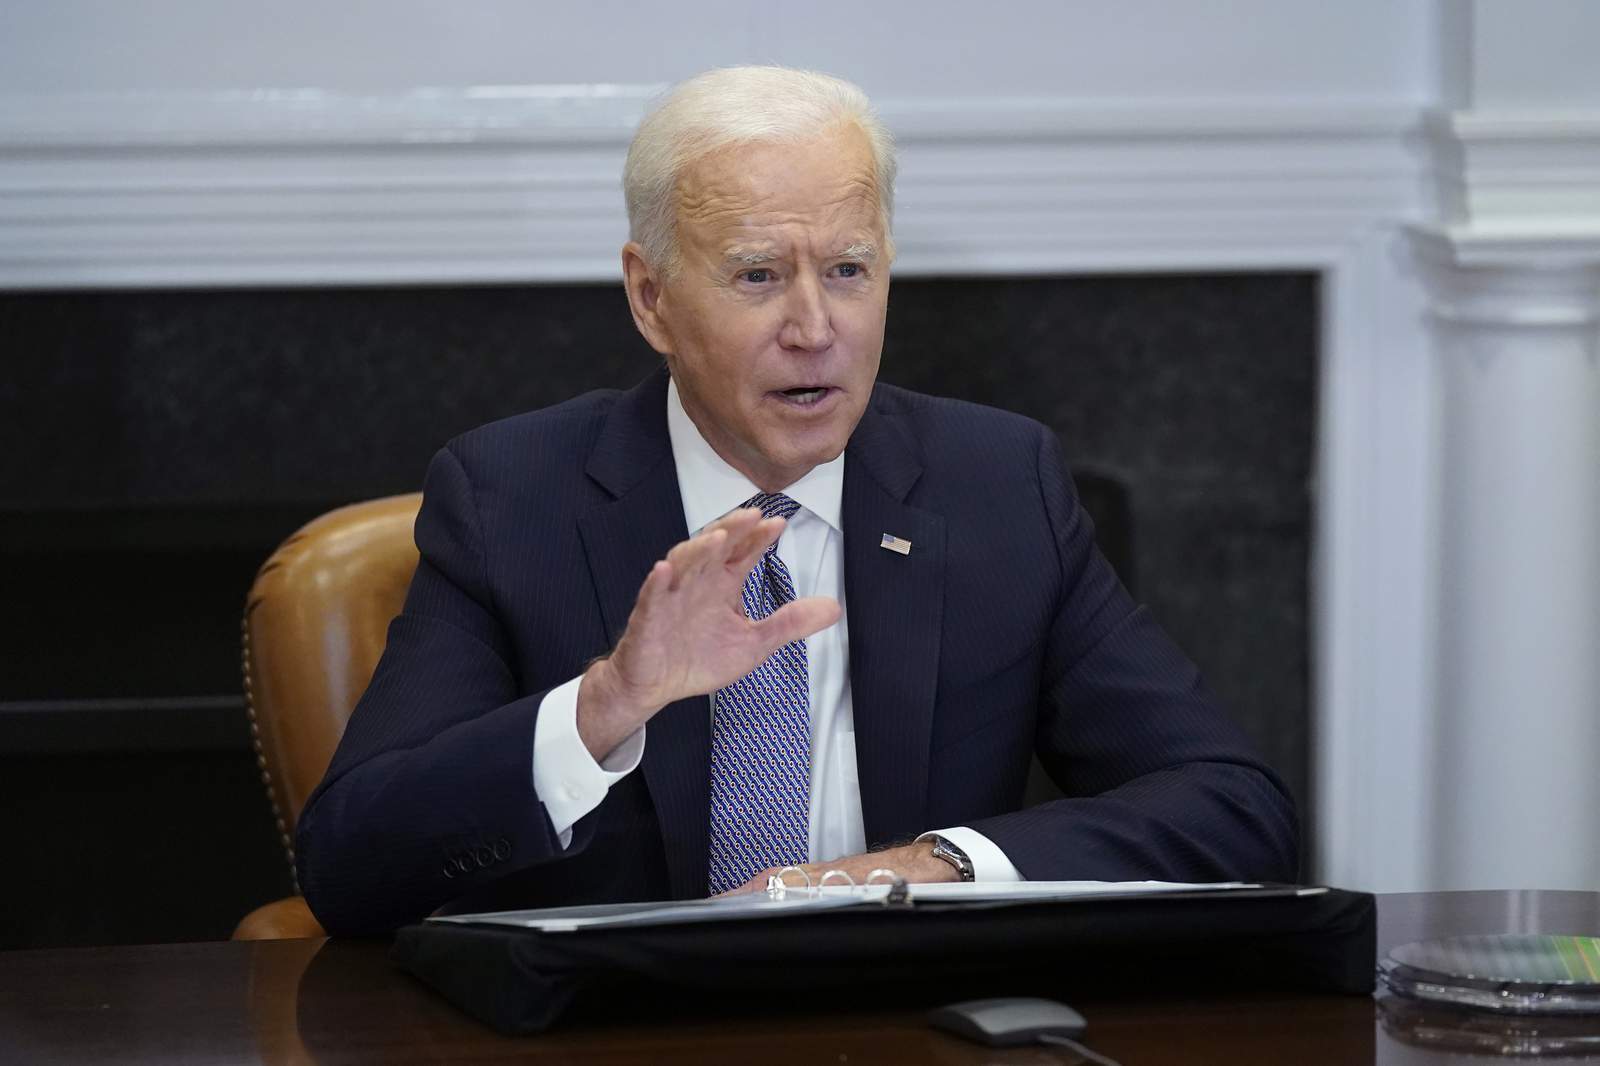 Biden raises concerns with Putin about Ukraine confrontation